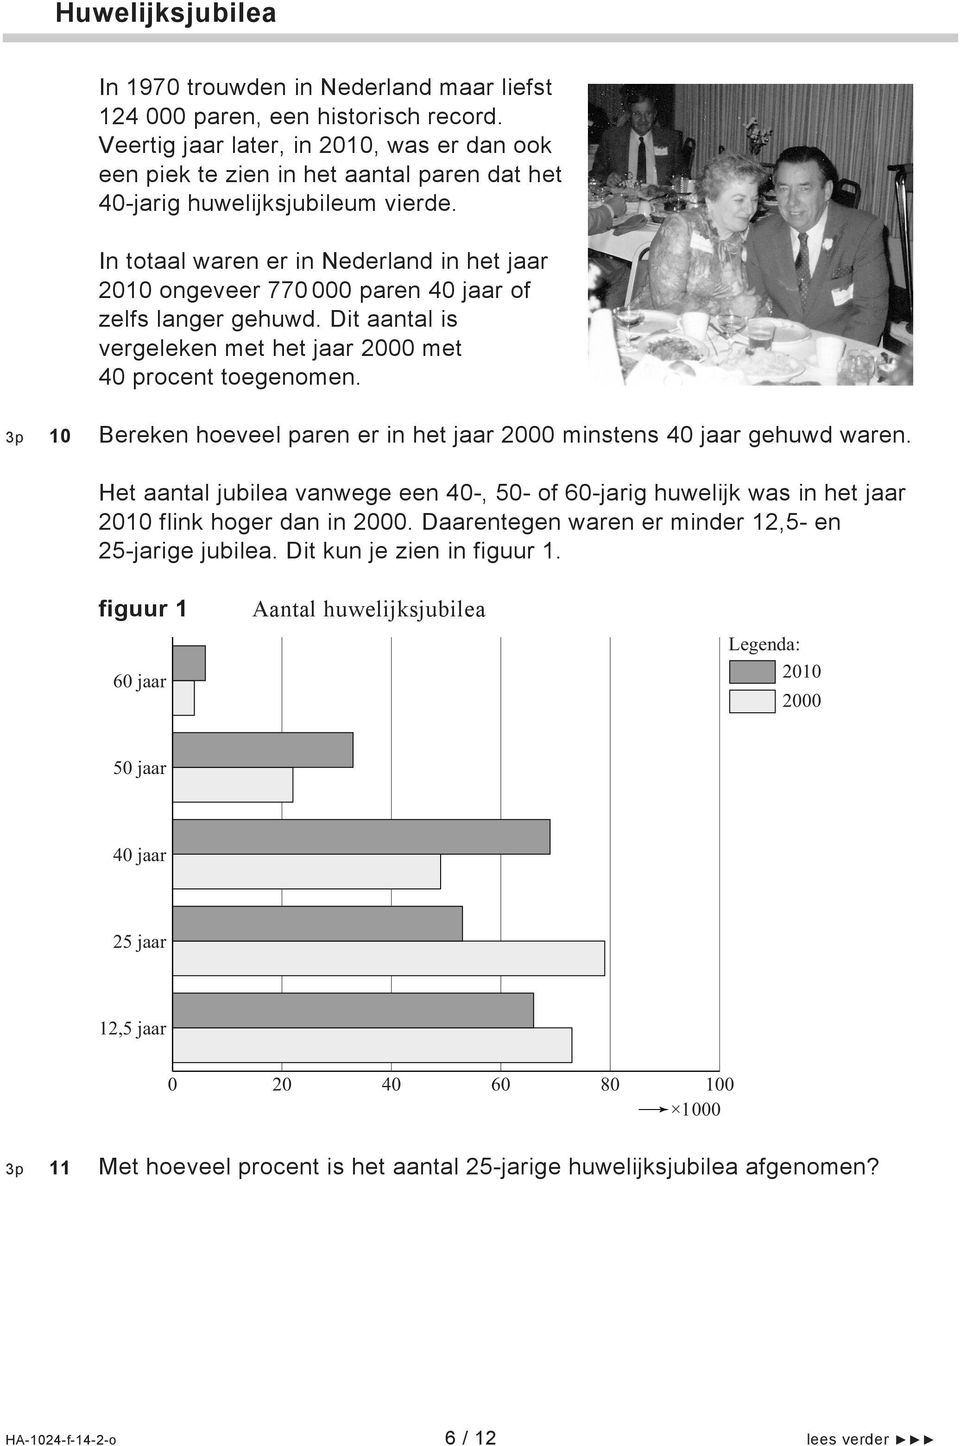 In totaal waren er in Nederland in het jaar 2010 ongeveer 770 000 paren 40 jaar of zelfs langer gehuwd. Dit aantal is vergeleken met het jaar 2000 met 40 procent toegenomen.